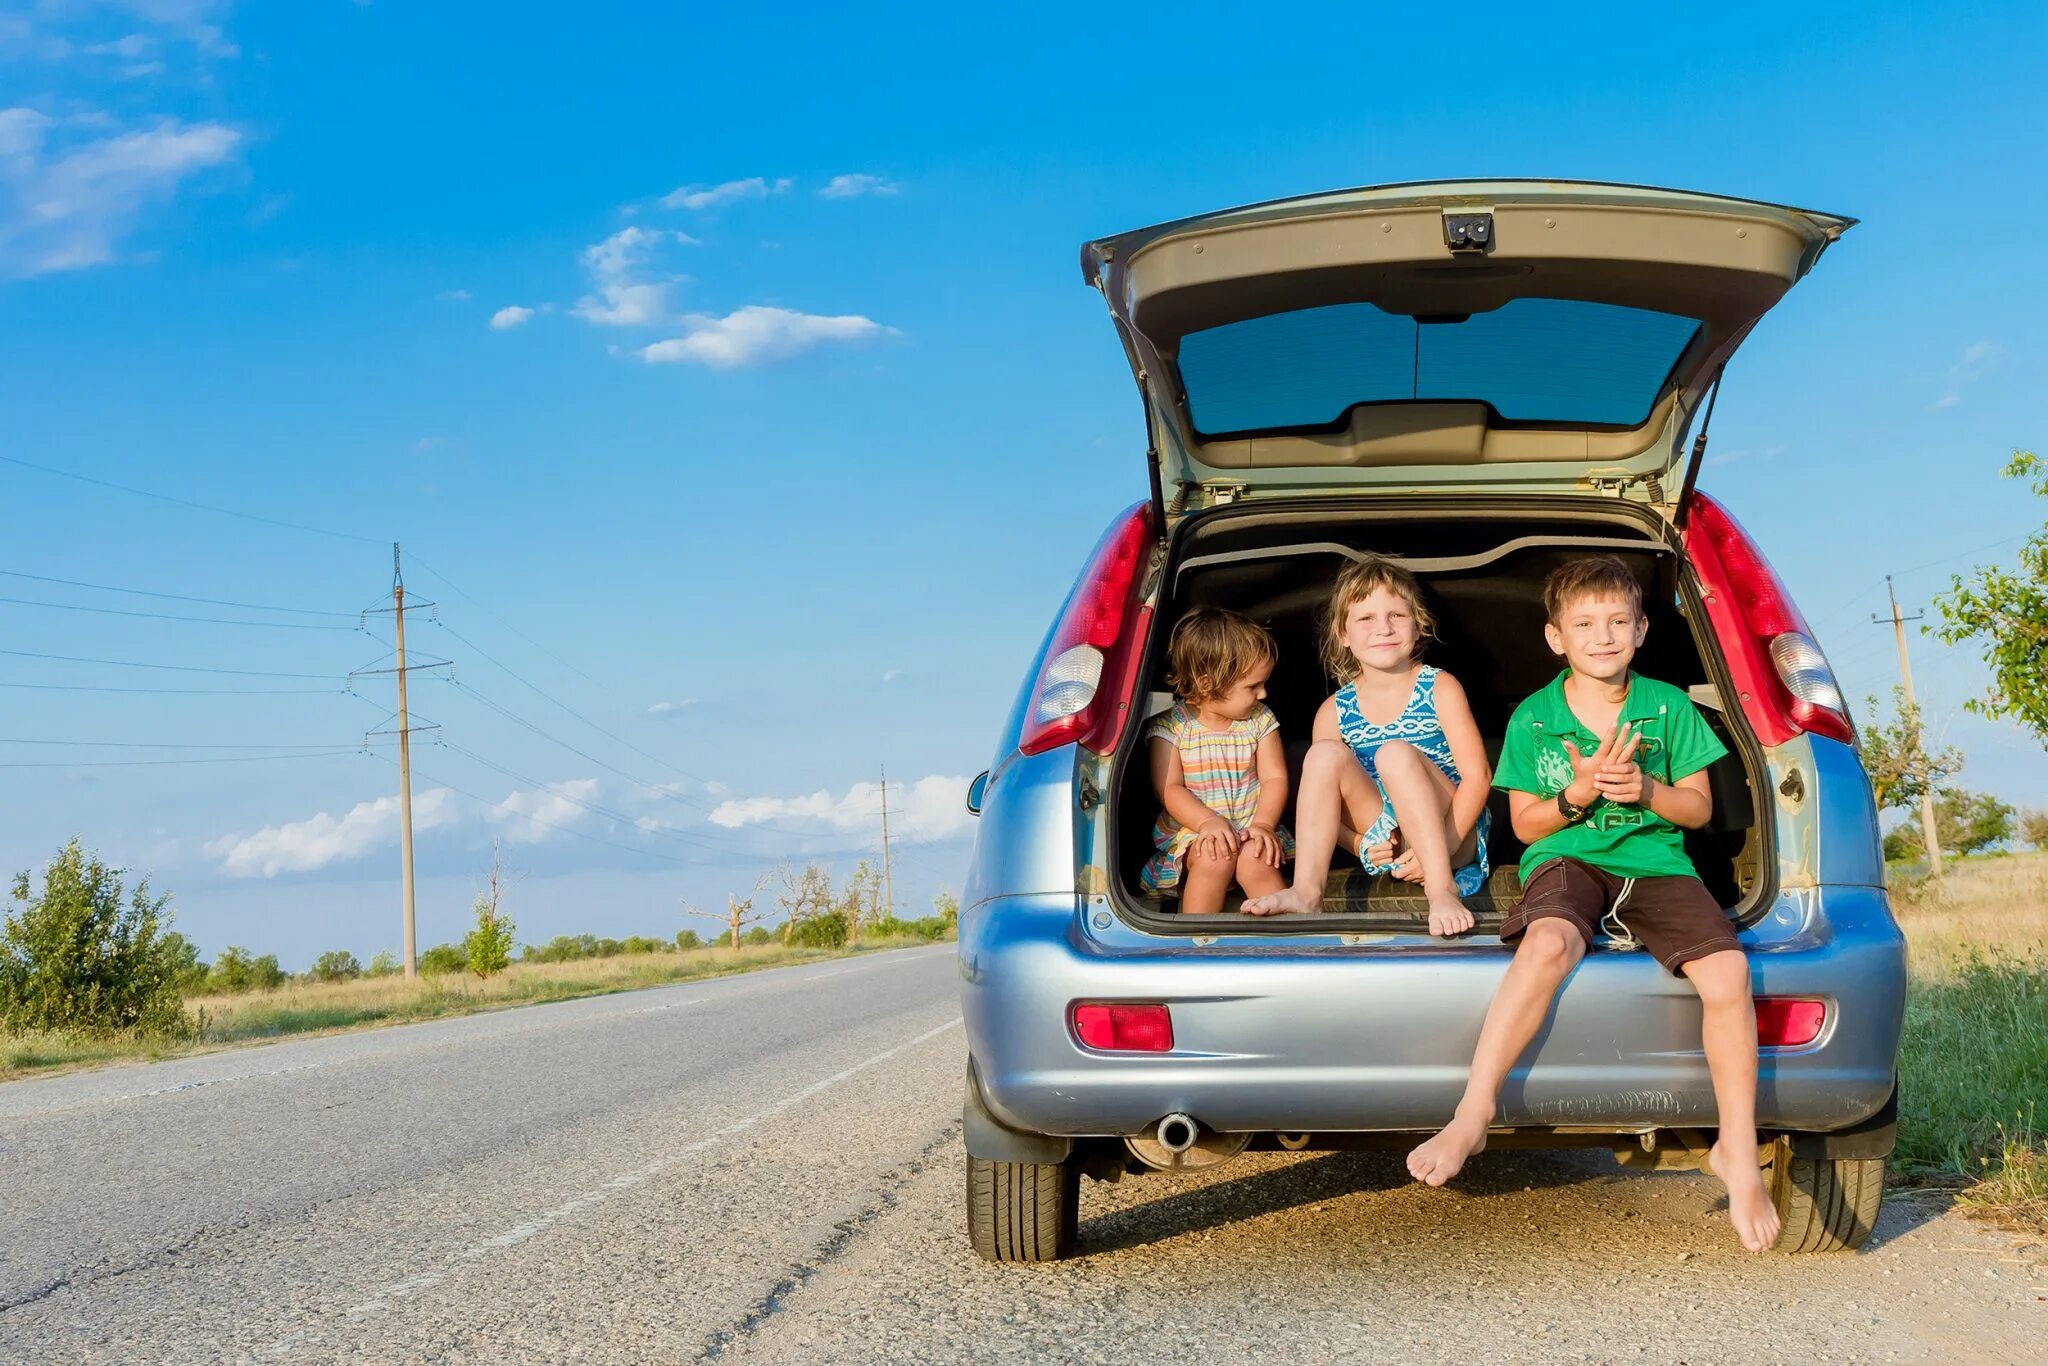 Володя вместе с семьей отправился в путешествие. Семейный автомобиль. Семья путешествует на машине. Машина для путешествий семьей. Автопутешествия с детьми.